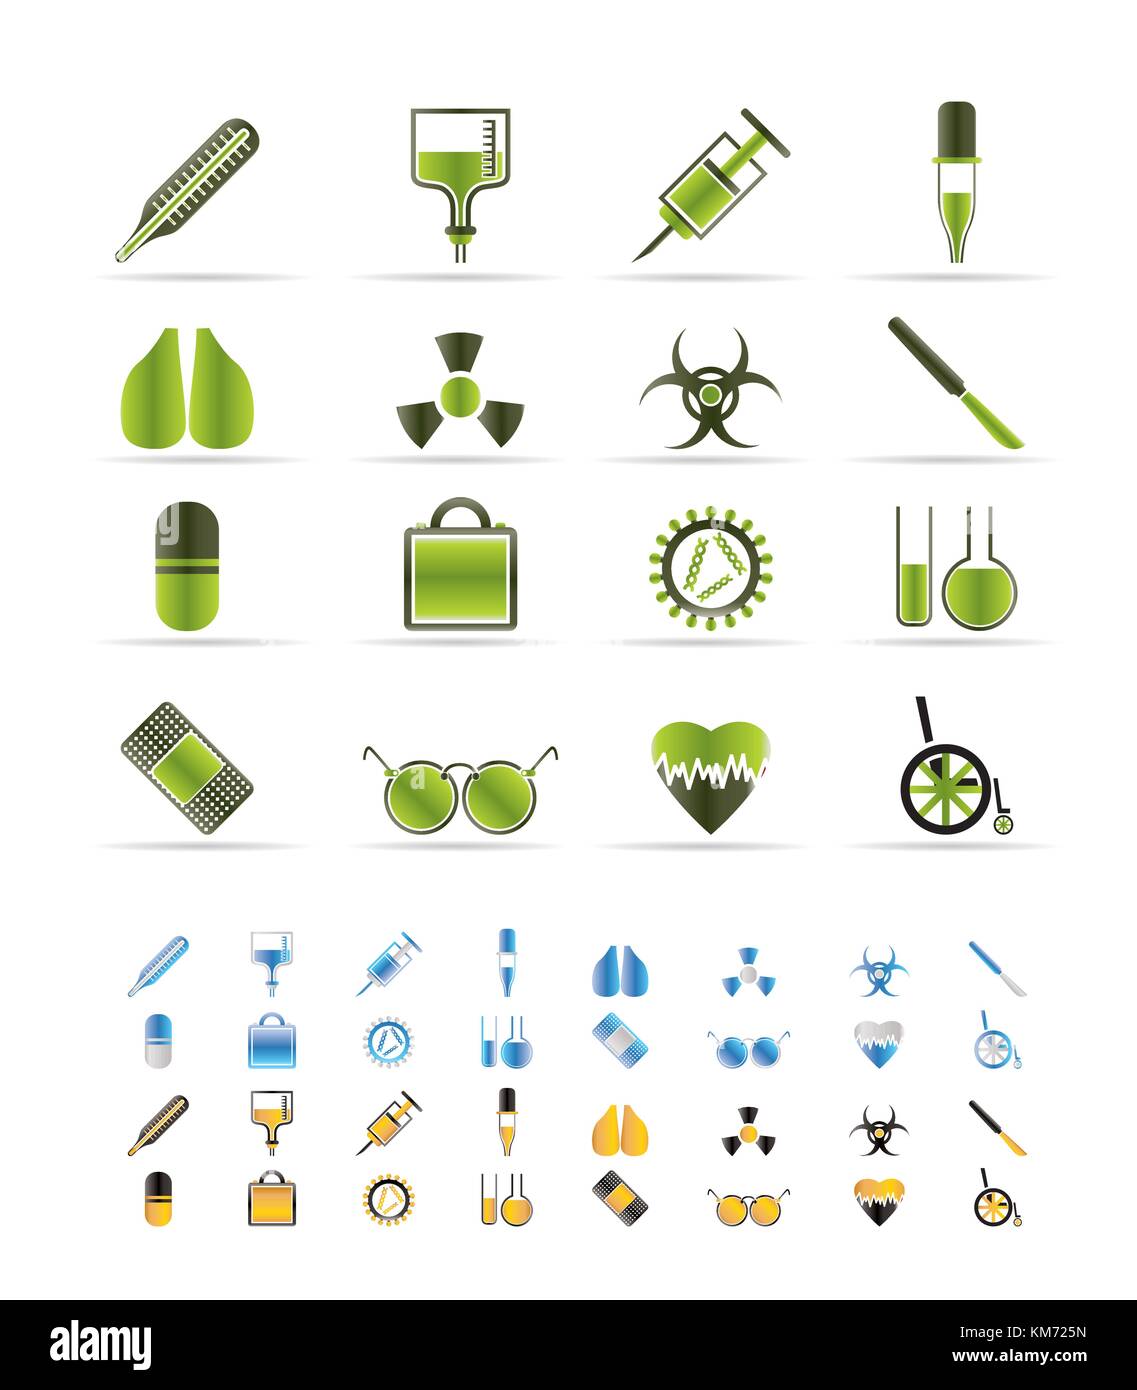 Sammlung von medizinischen themed Symbole und Warnung - Zeichen vektor Icon Set - 3 Farben im Lieferumfang enthalten Stock Vektor